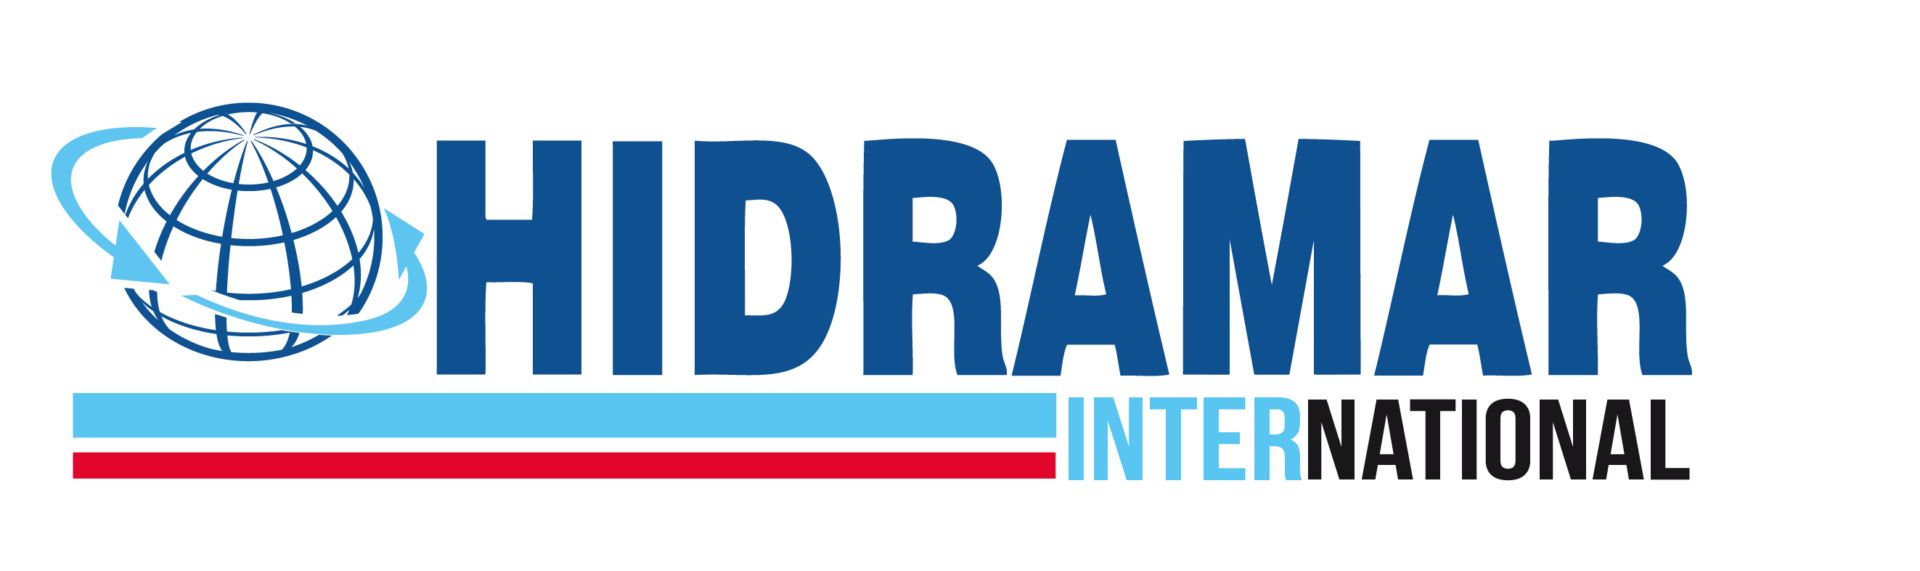 Hidramar International